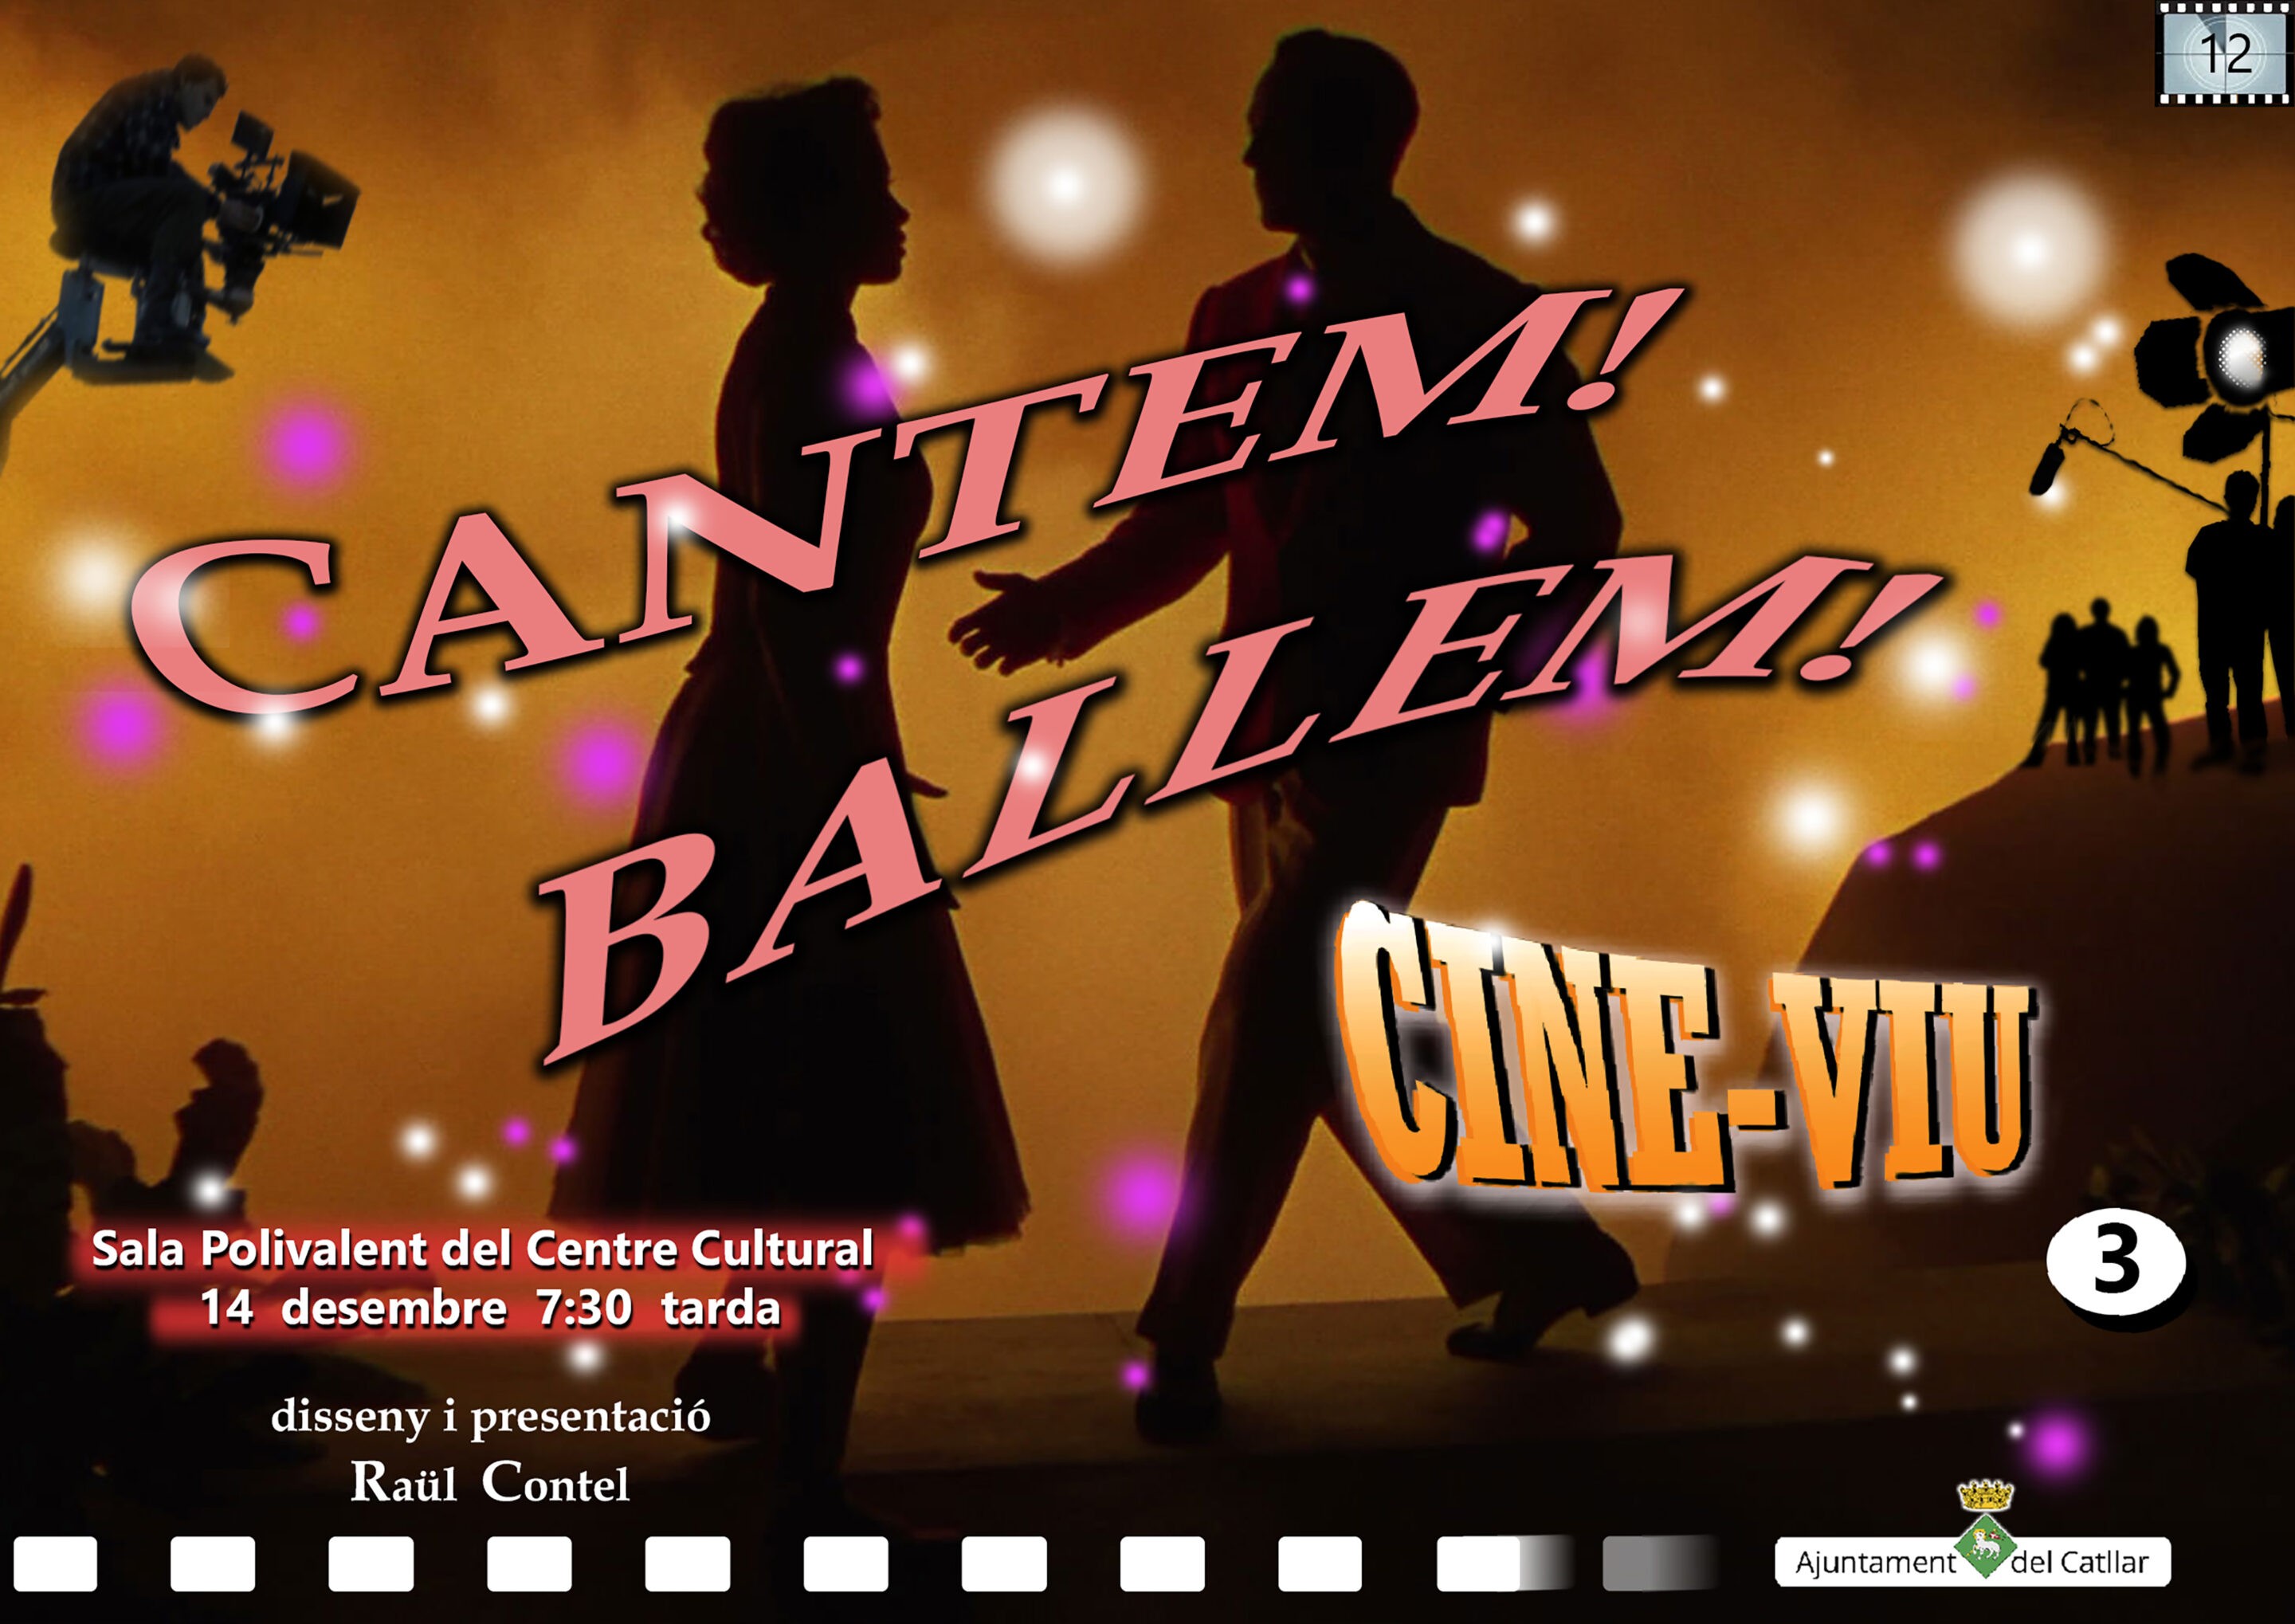 CINE-VIU 3: CANTEM!!! BALLEM!!! (14/12/2022)